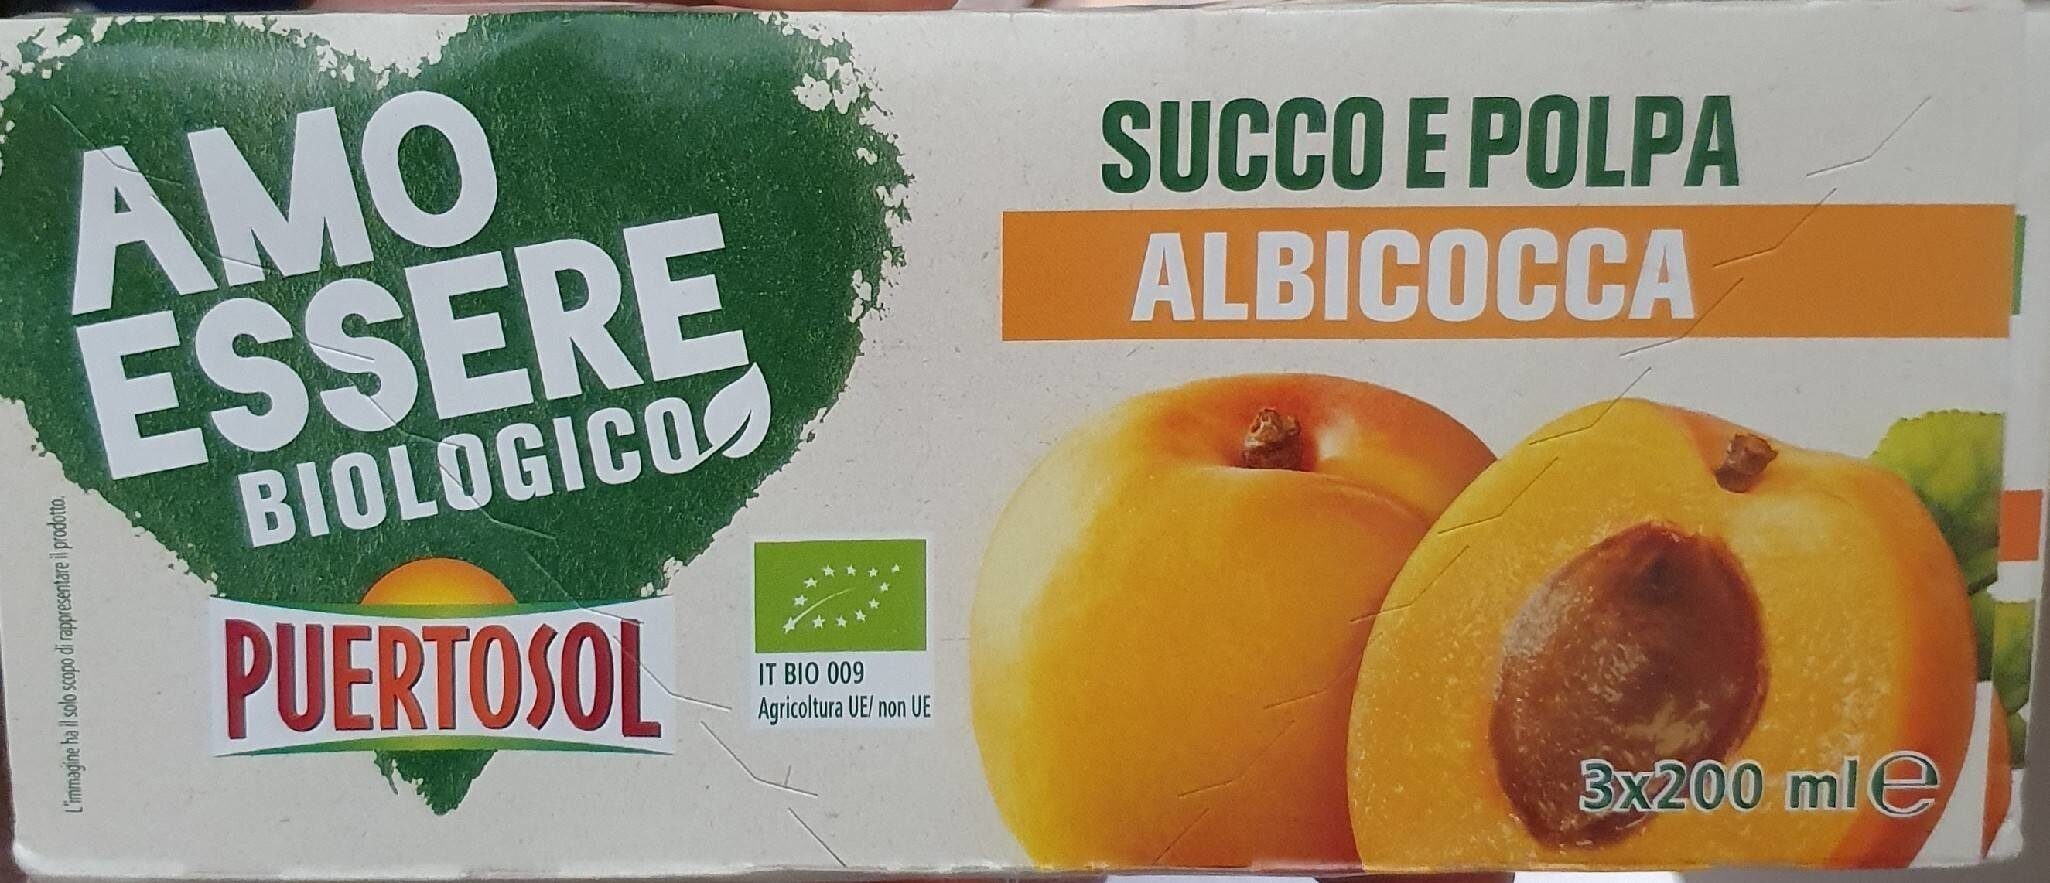 Succo e Polpa "Amo Essere" Albicocca - Produkt - it